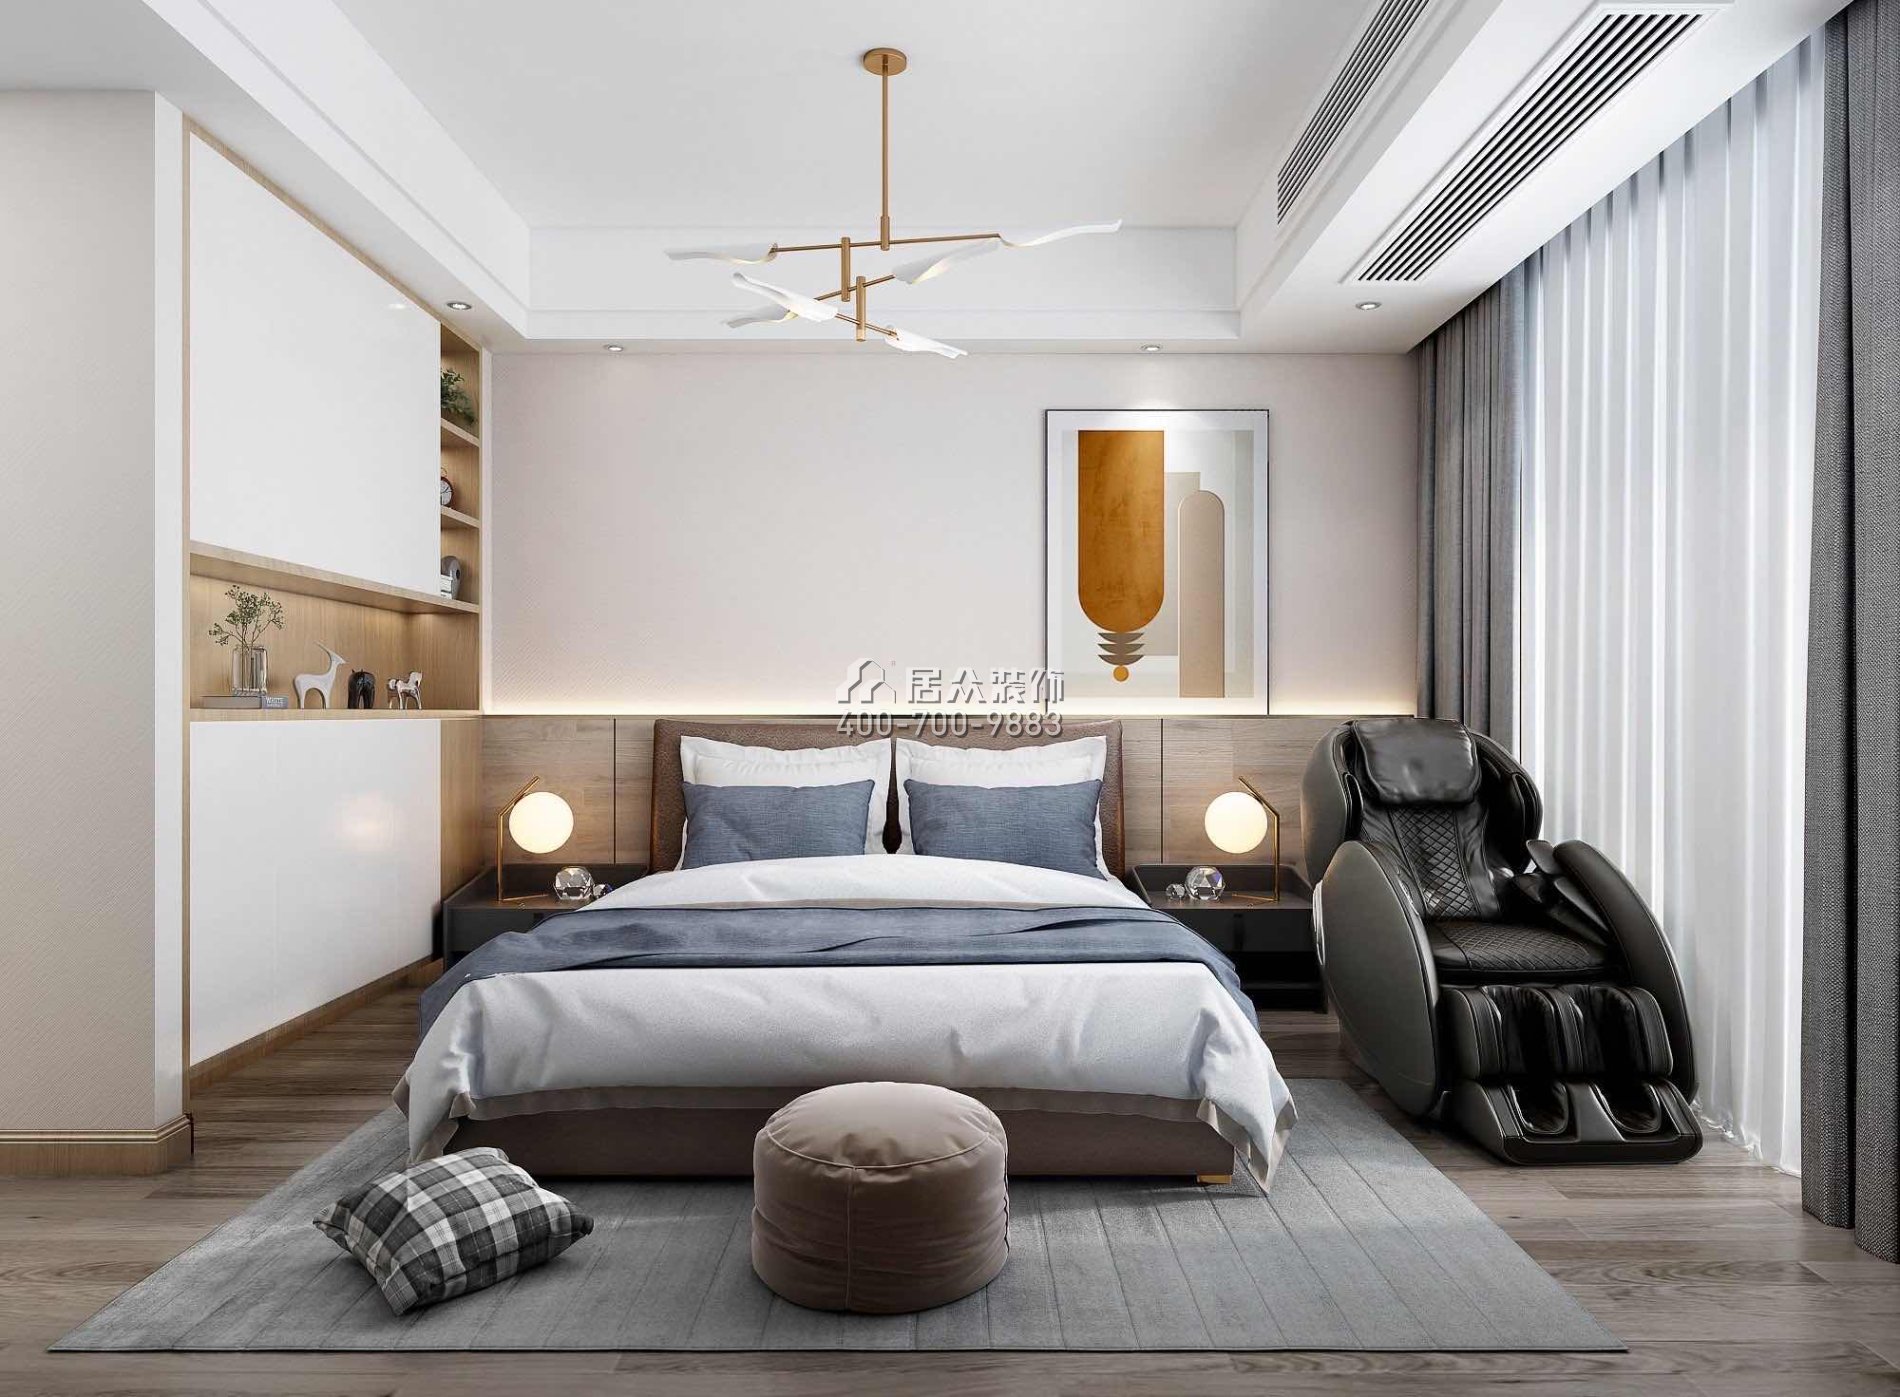 中泰上境280平方米現代簡約風格別墅戶型臥室裝修效果圖